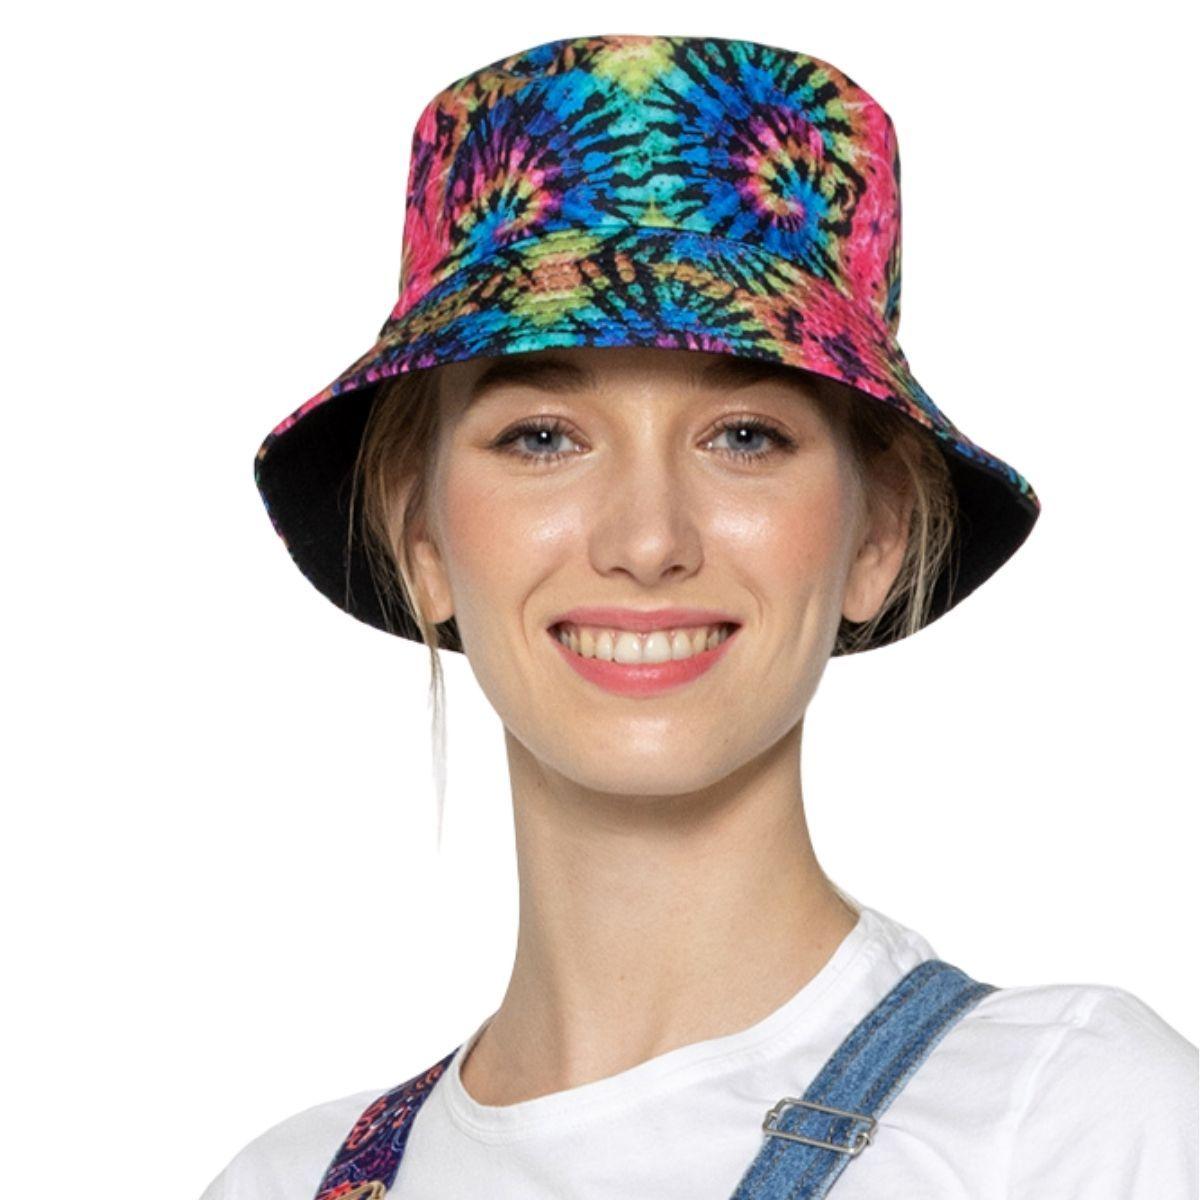 Multicolor Bucket Hat with Tie Dye Pattern, Reversible